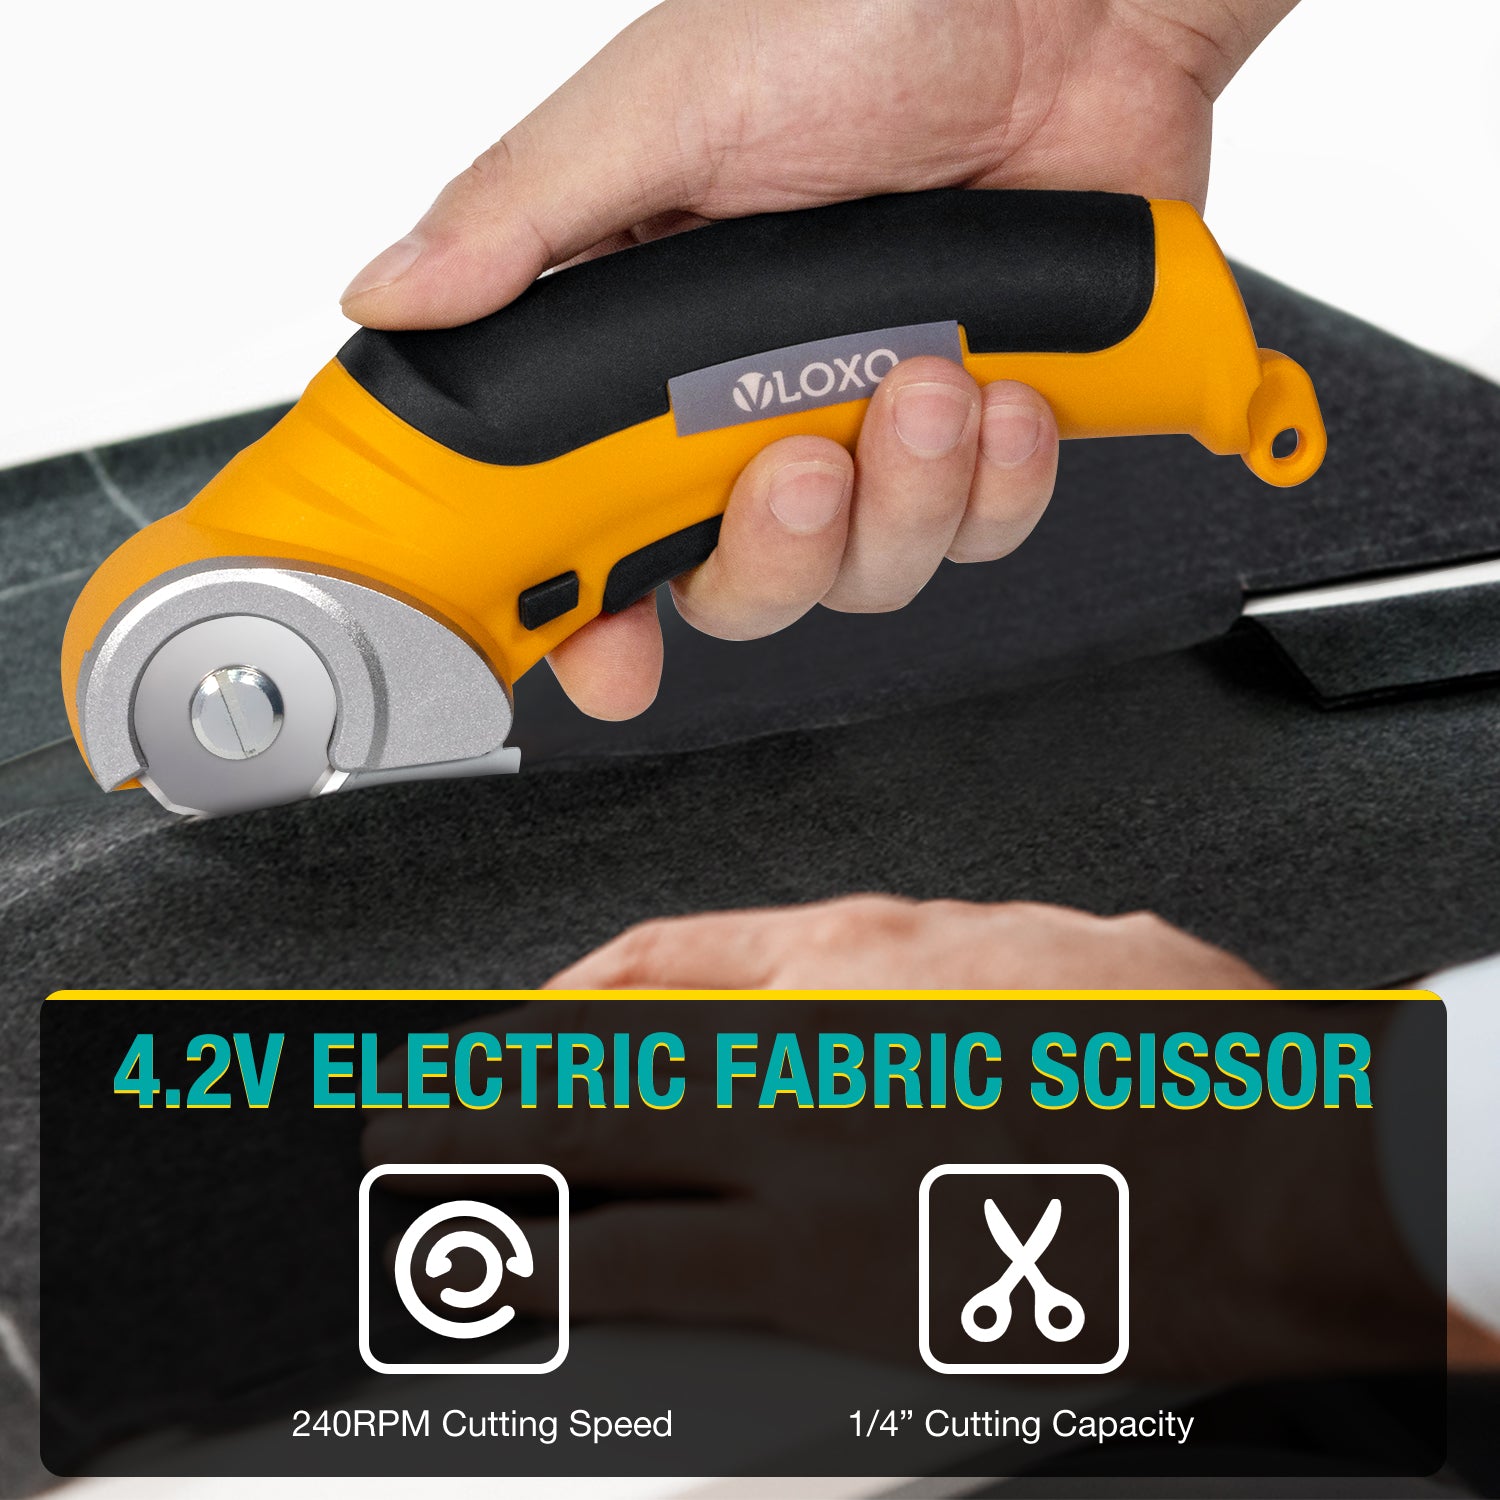 Electric Fabric Scissors